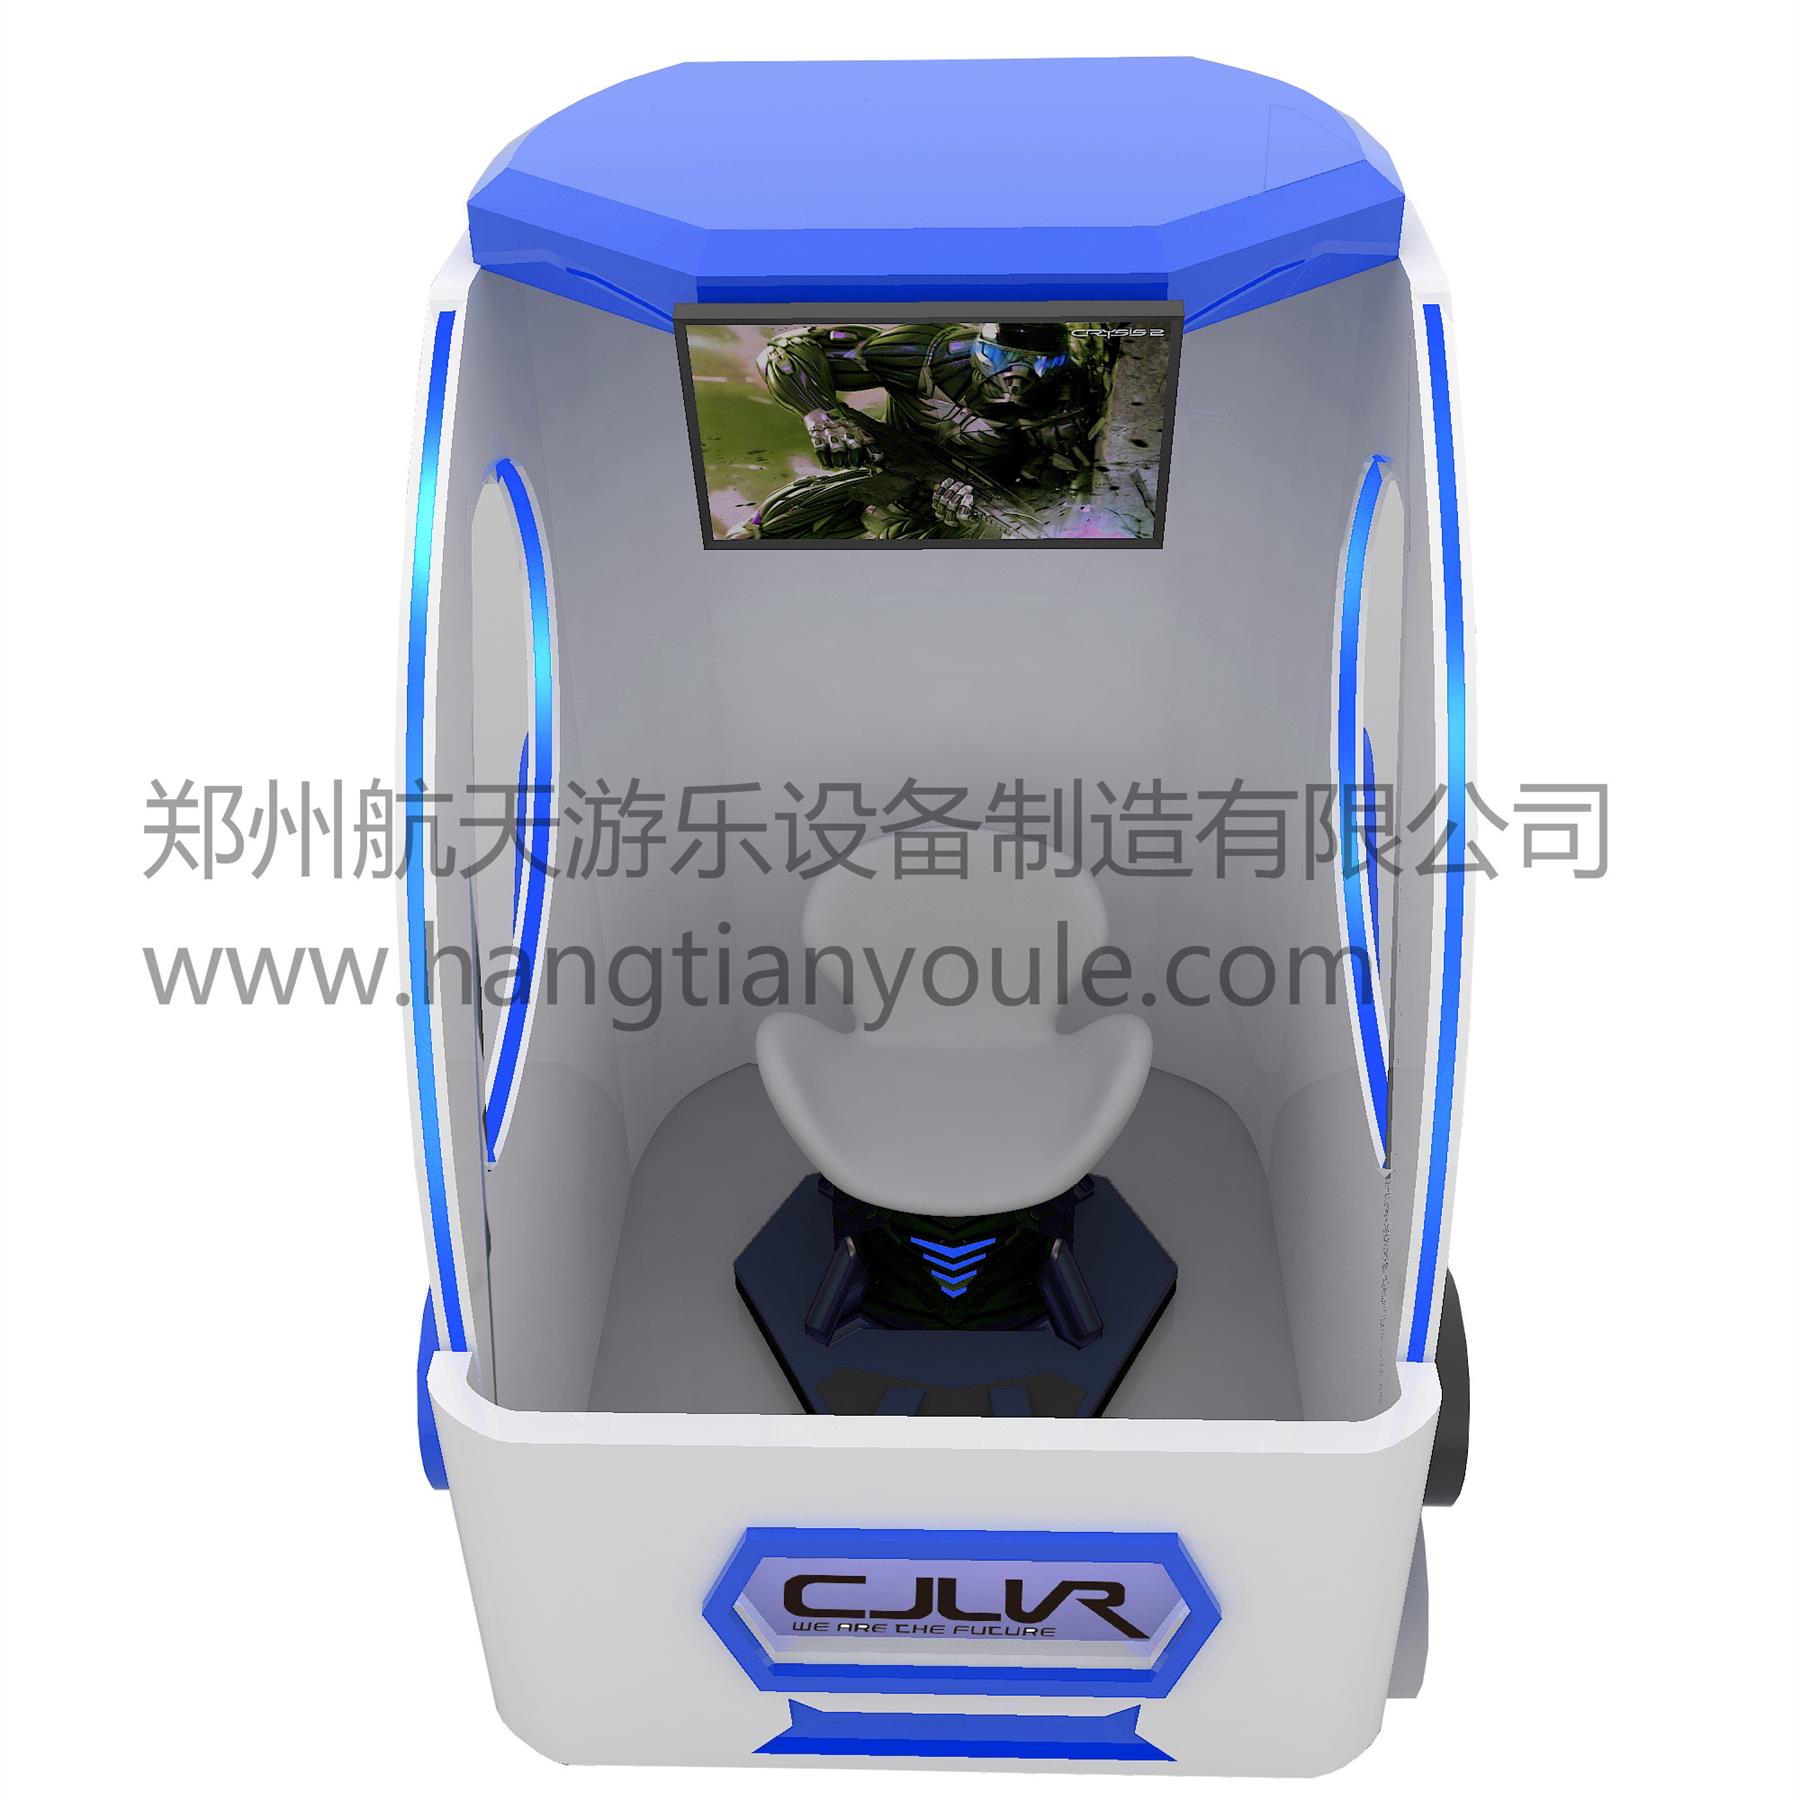 郑州新款VR设备9DVR影院批发品牌